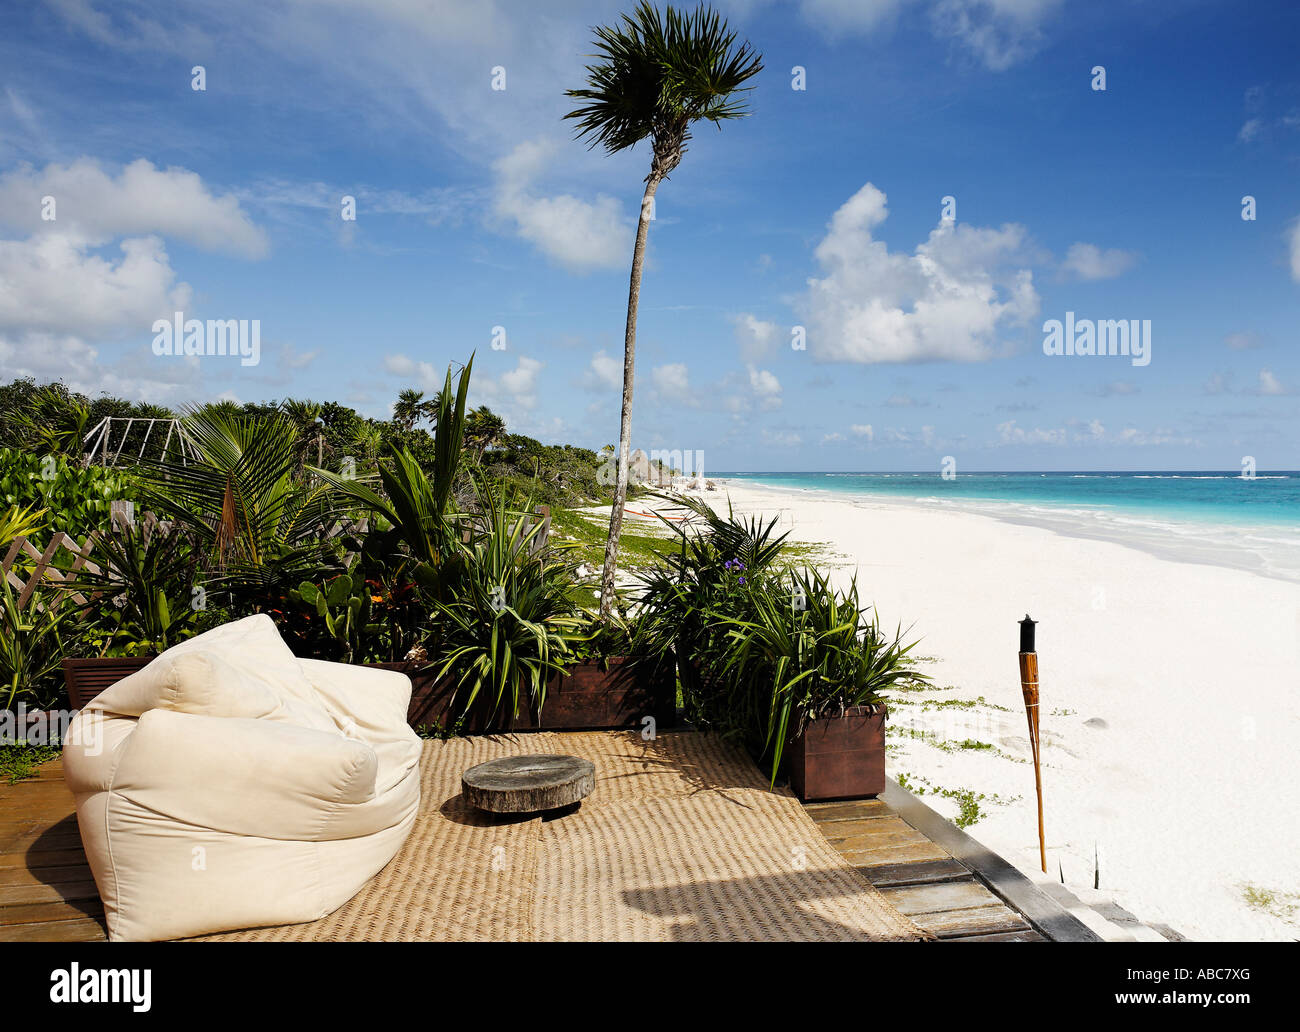 Terraza de una cabaña con vista a la hermosa playa de arena blanca de Tulum en Yucatán, México Foto de stock